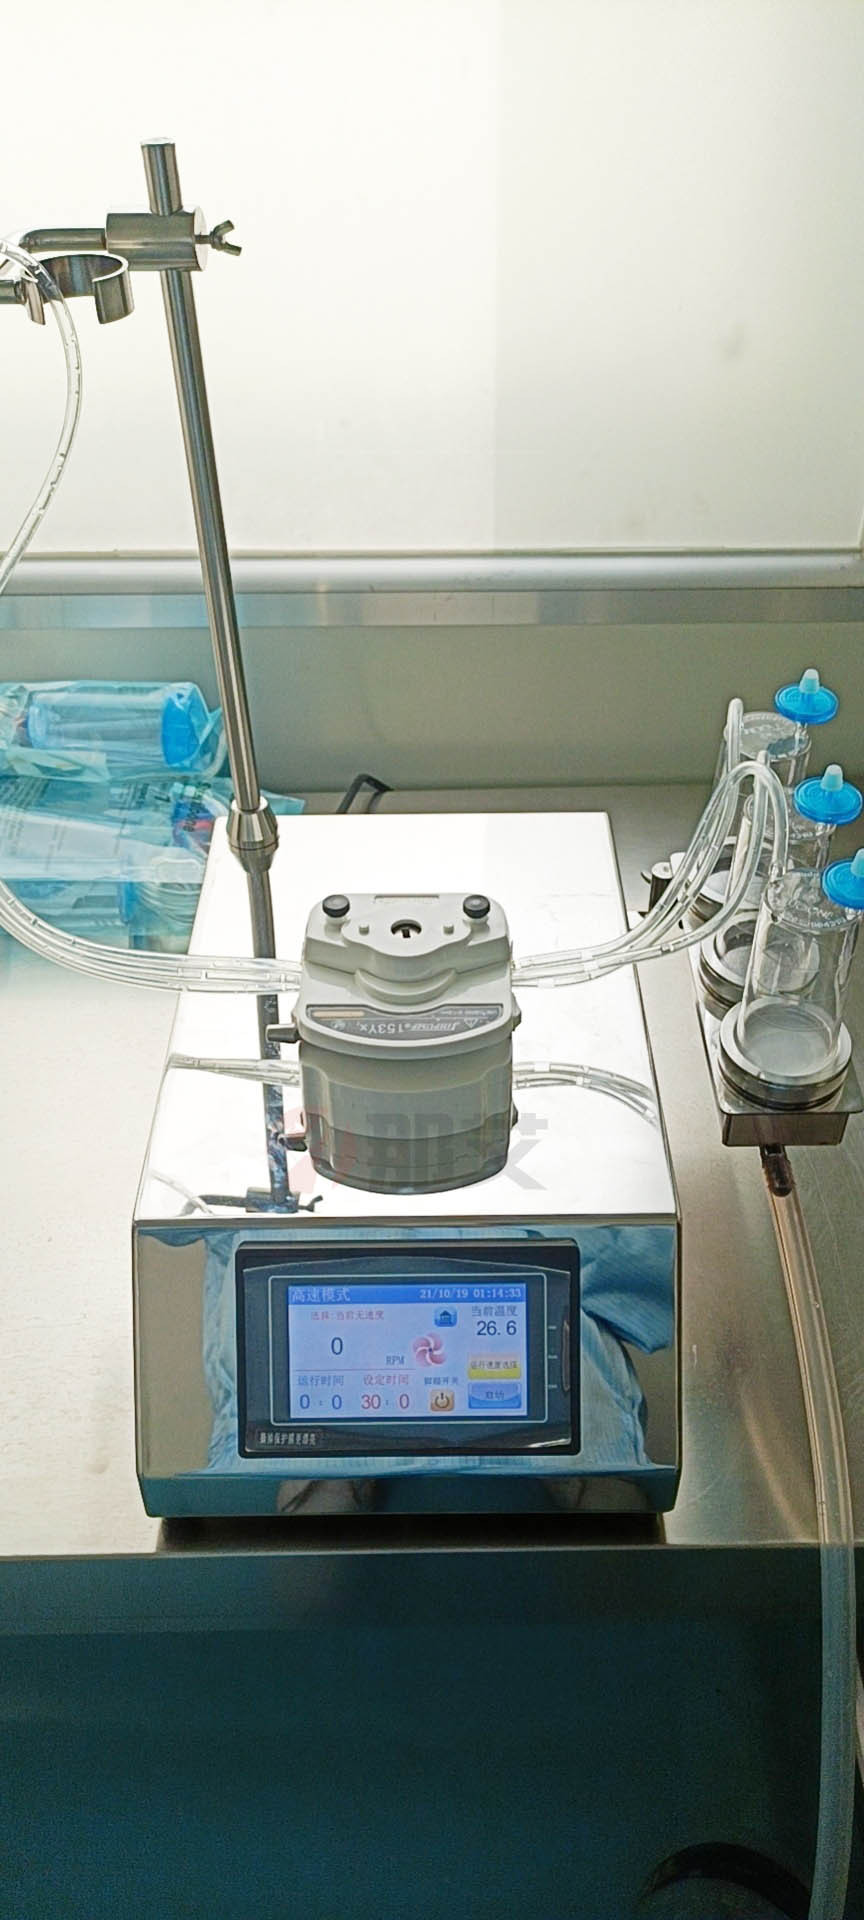 上海智能集菌仪,镜面不锈钢,可配合薄膜过滤器用于药品、食品、饮料等行业的微生物限度检查